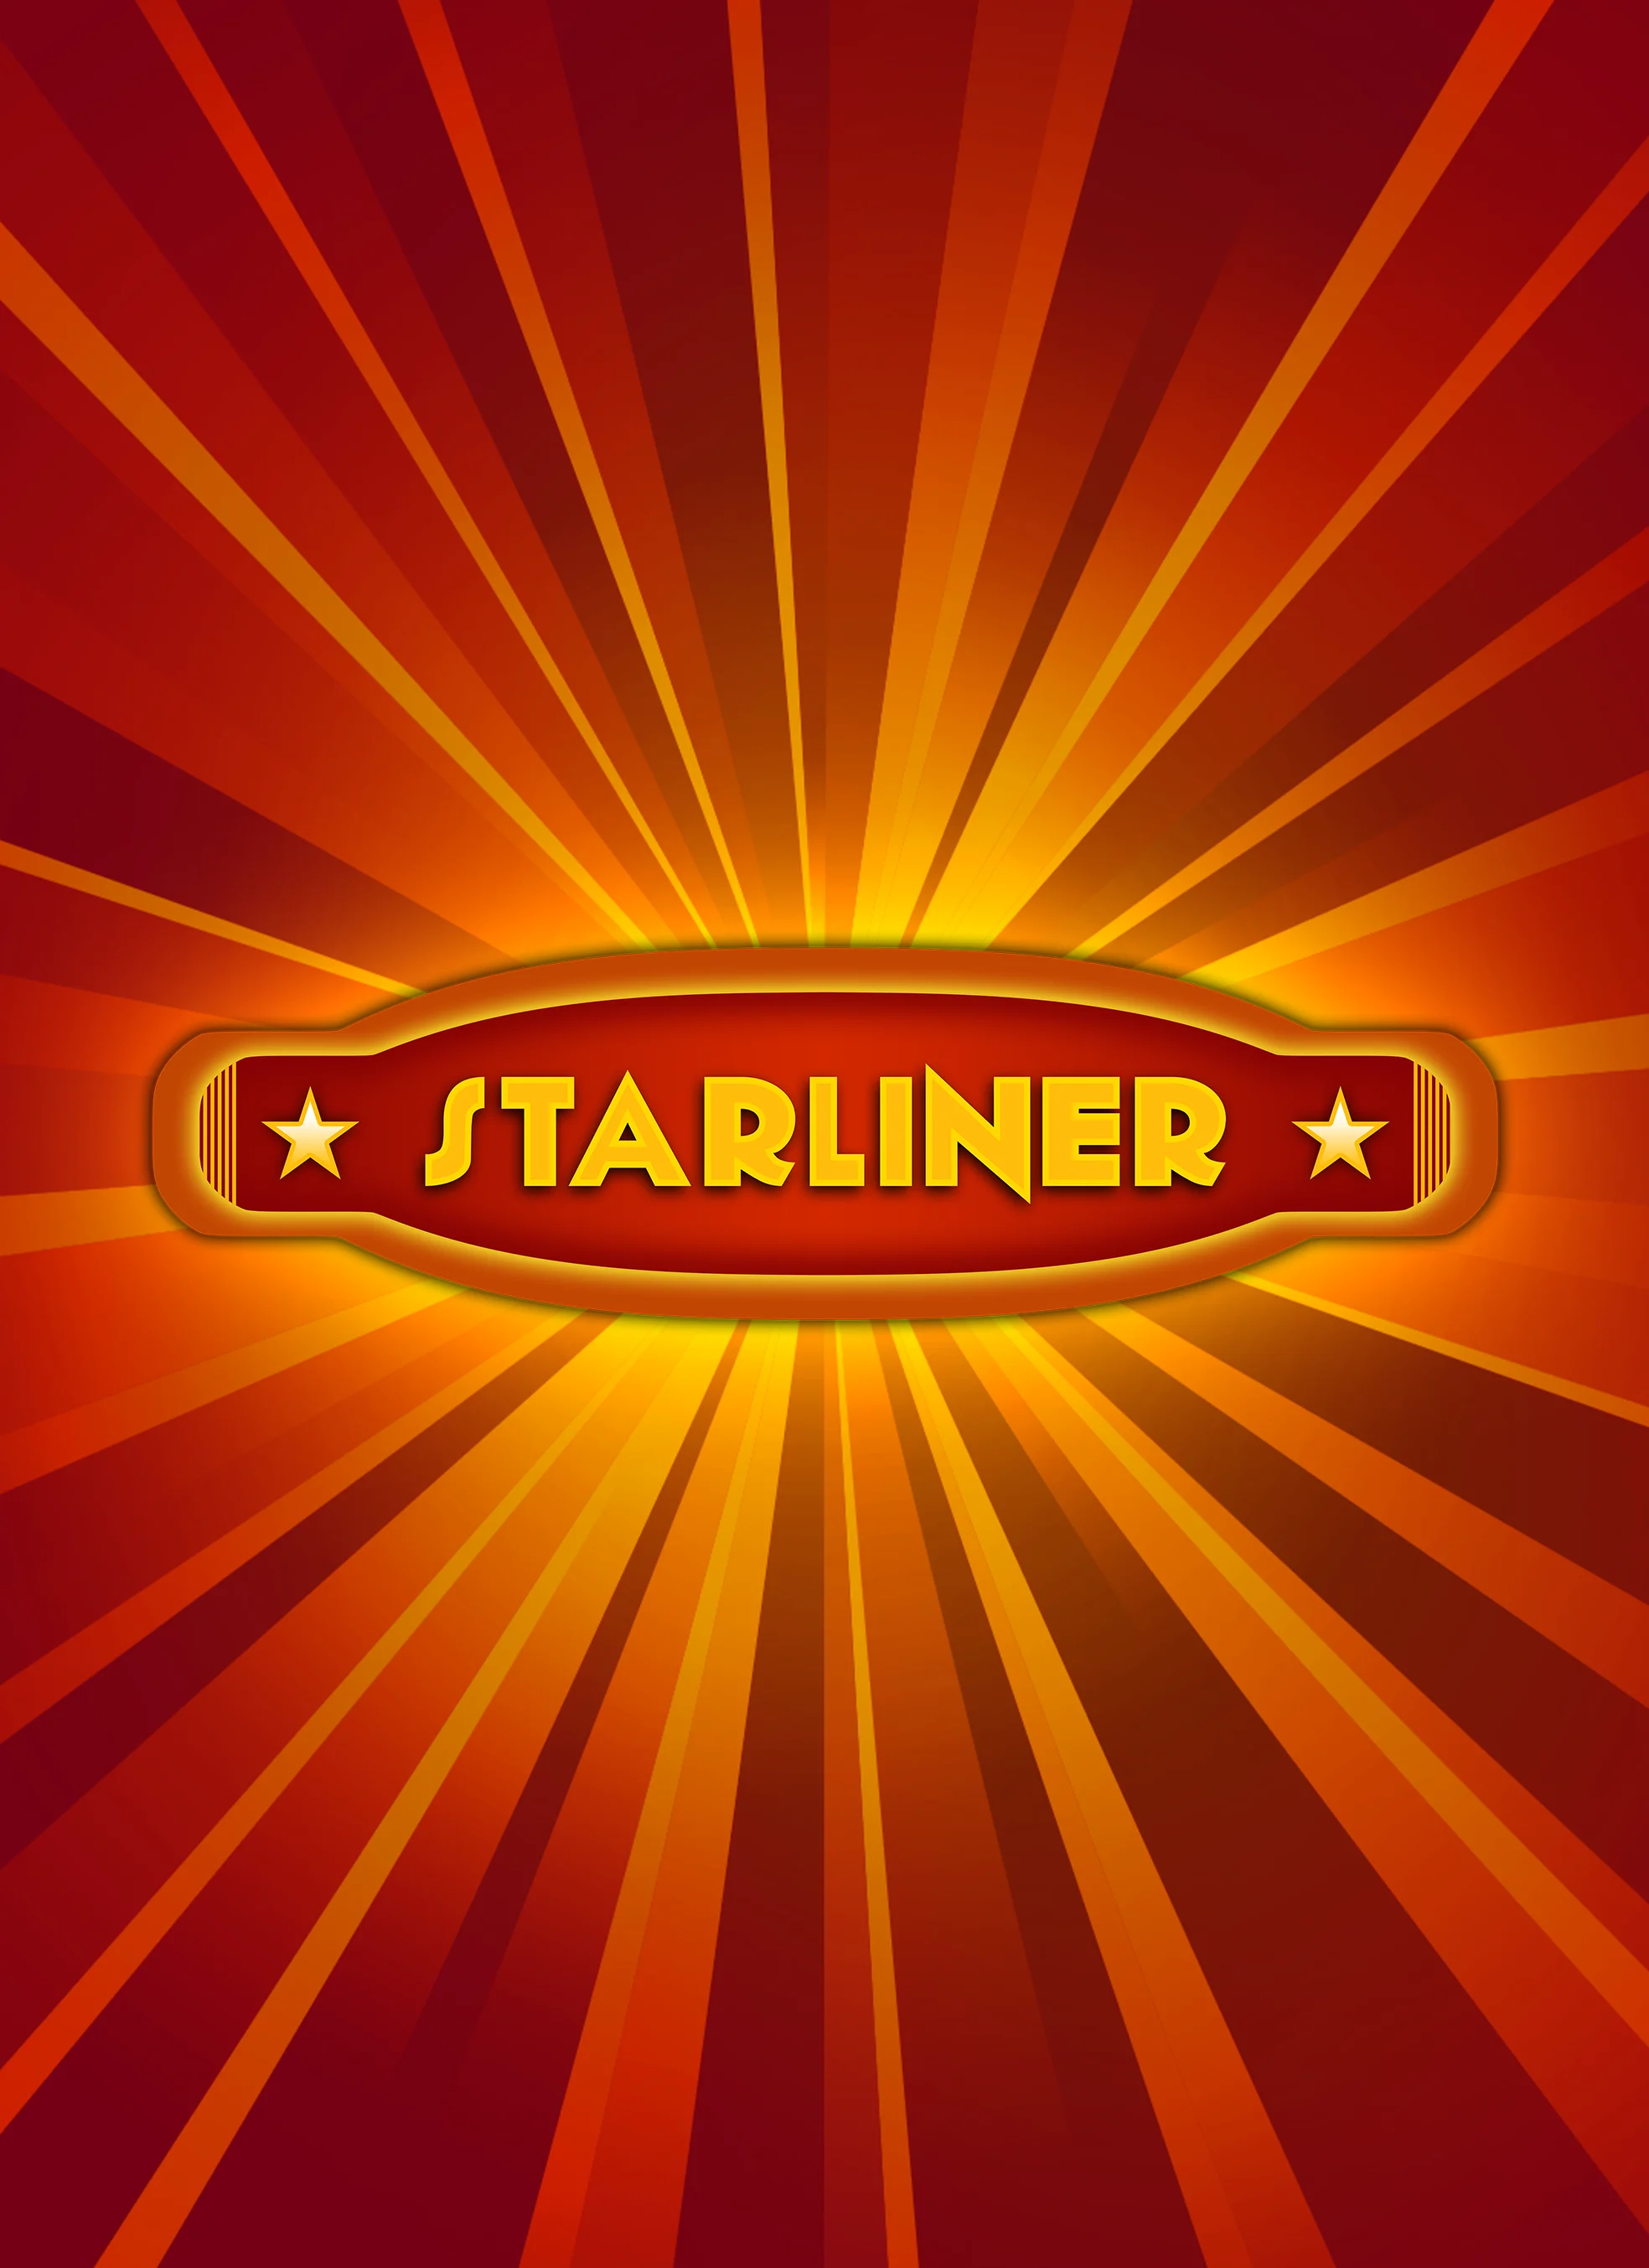 Gioca a Starliner sul casino online Madisoncasino.be